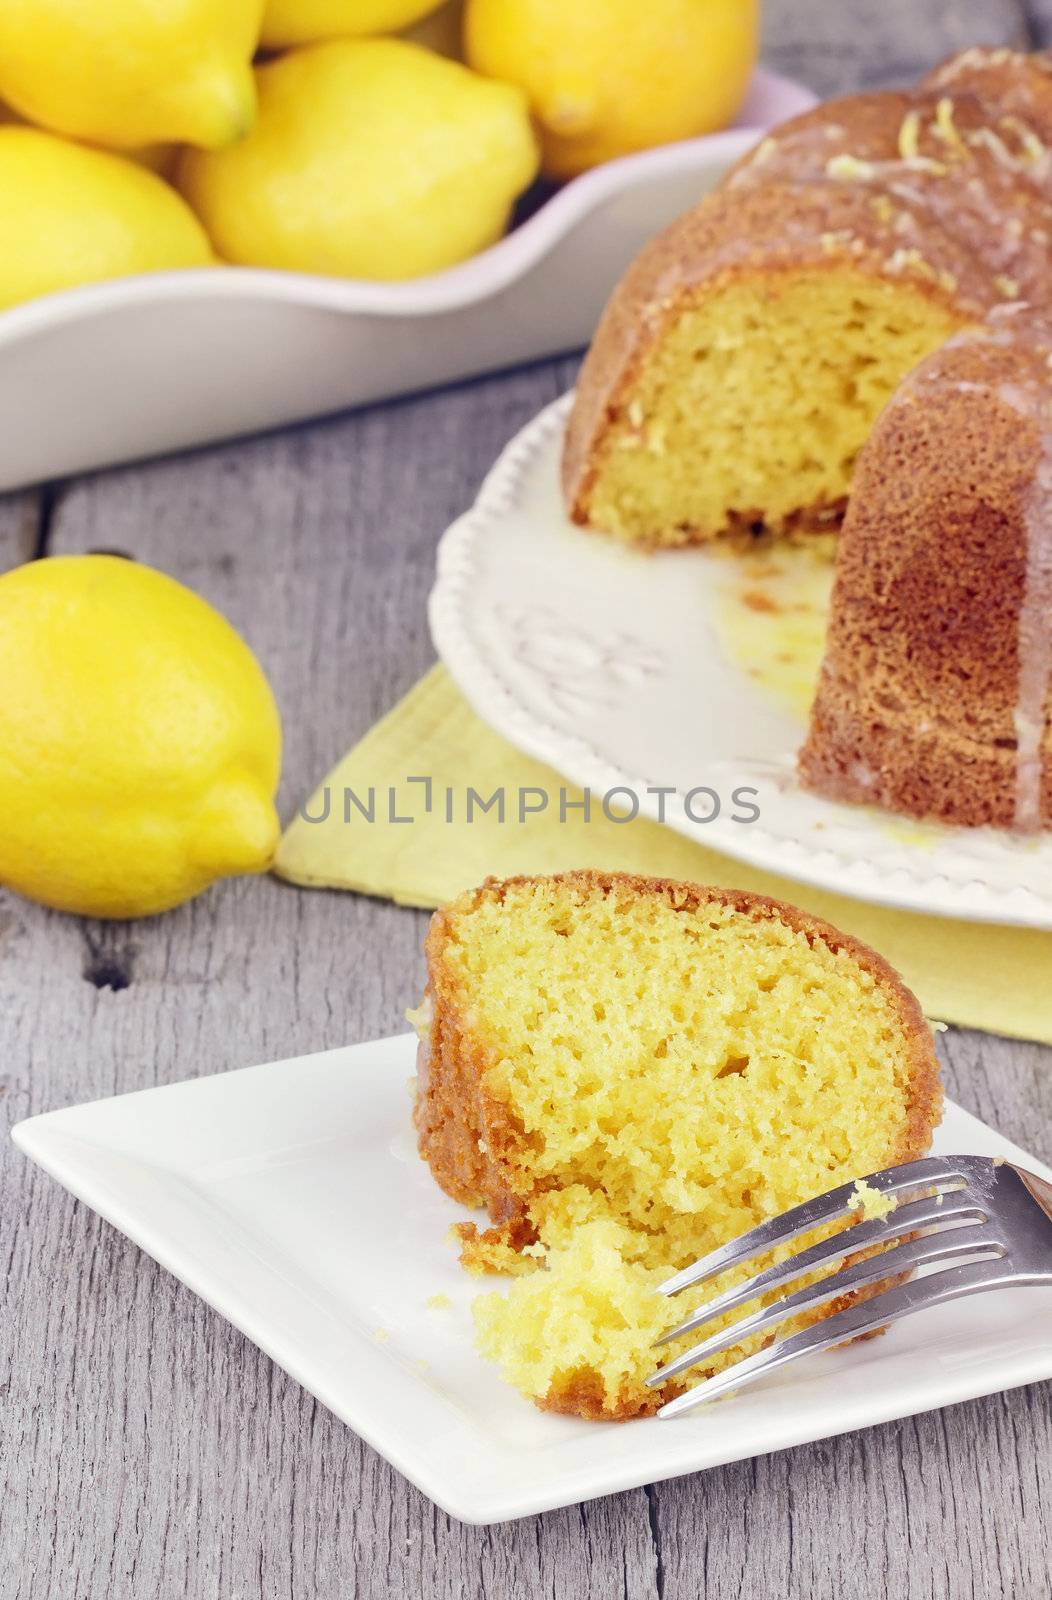 Lemon Bundt Cake by StephanieFrey